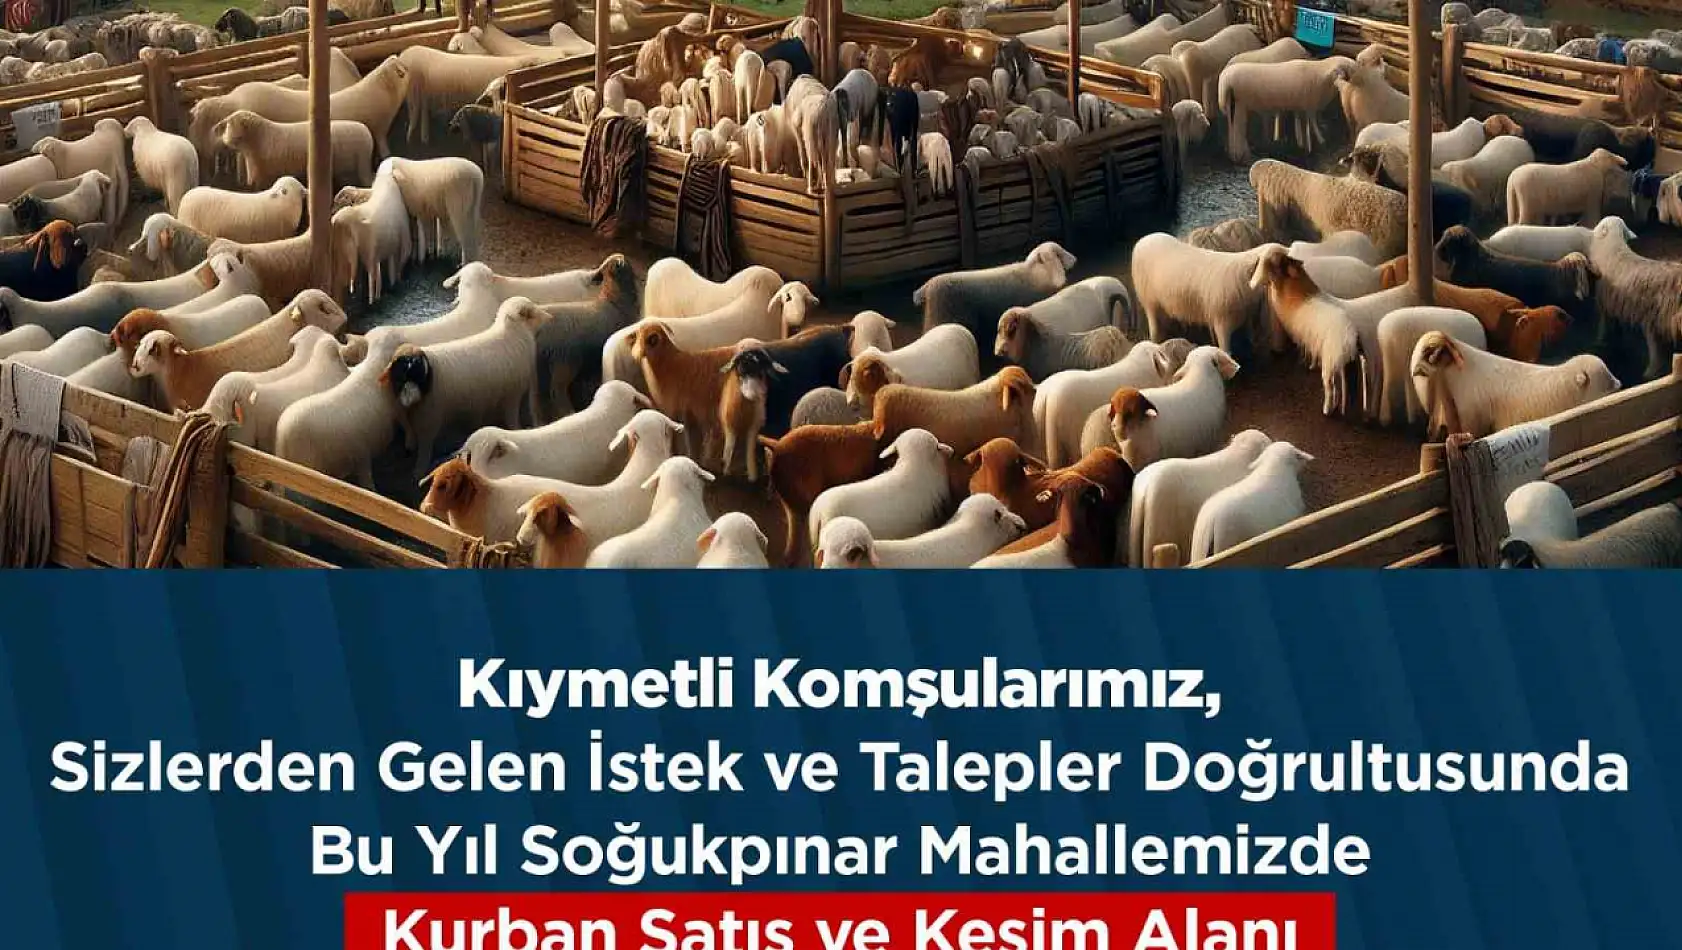 İstanbul'da belediye kurban pazarını kaldırdı!